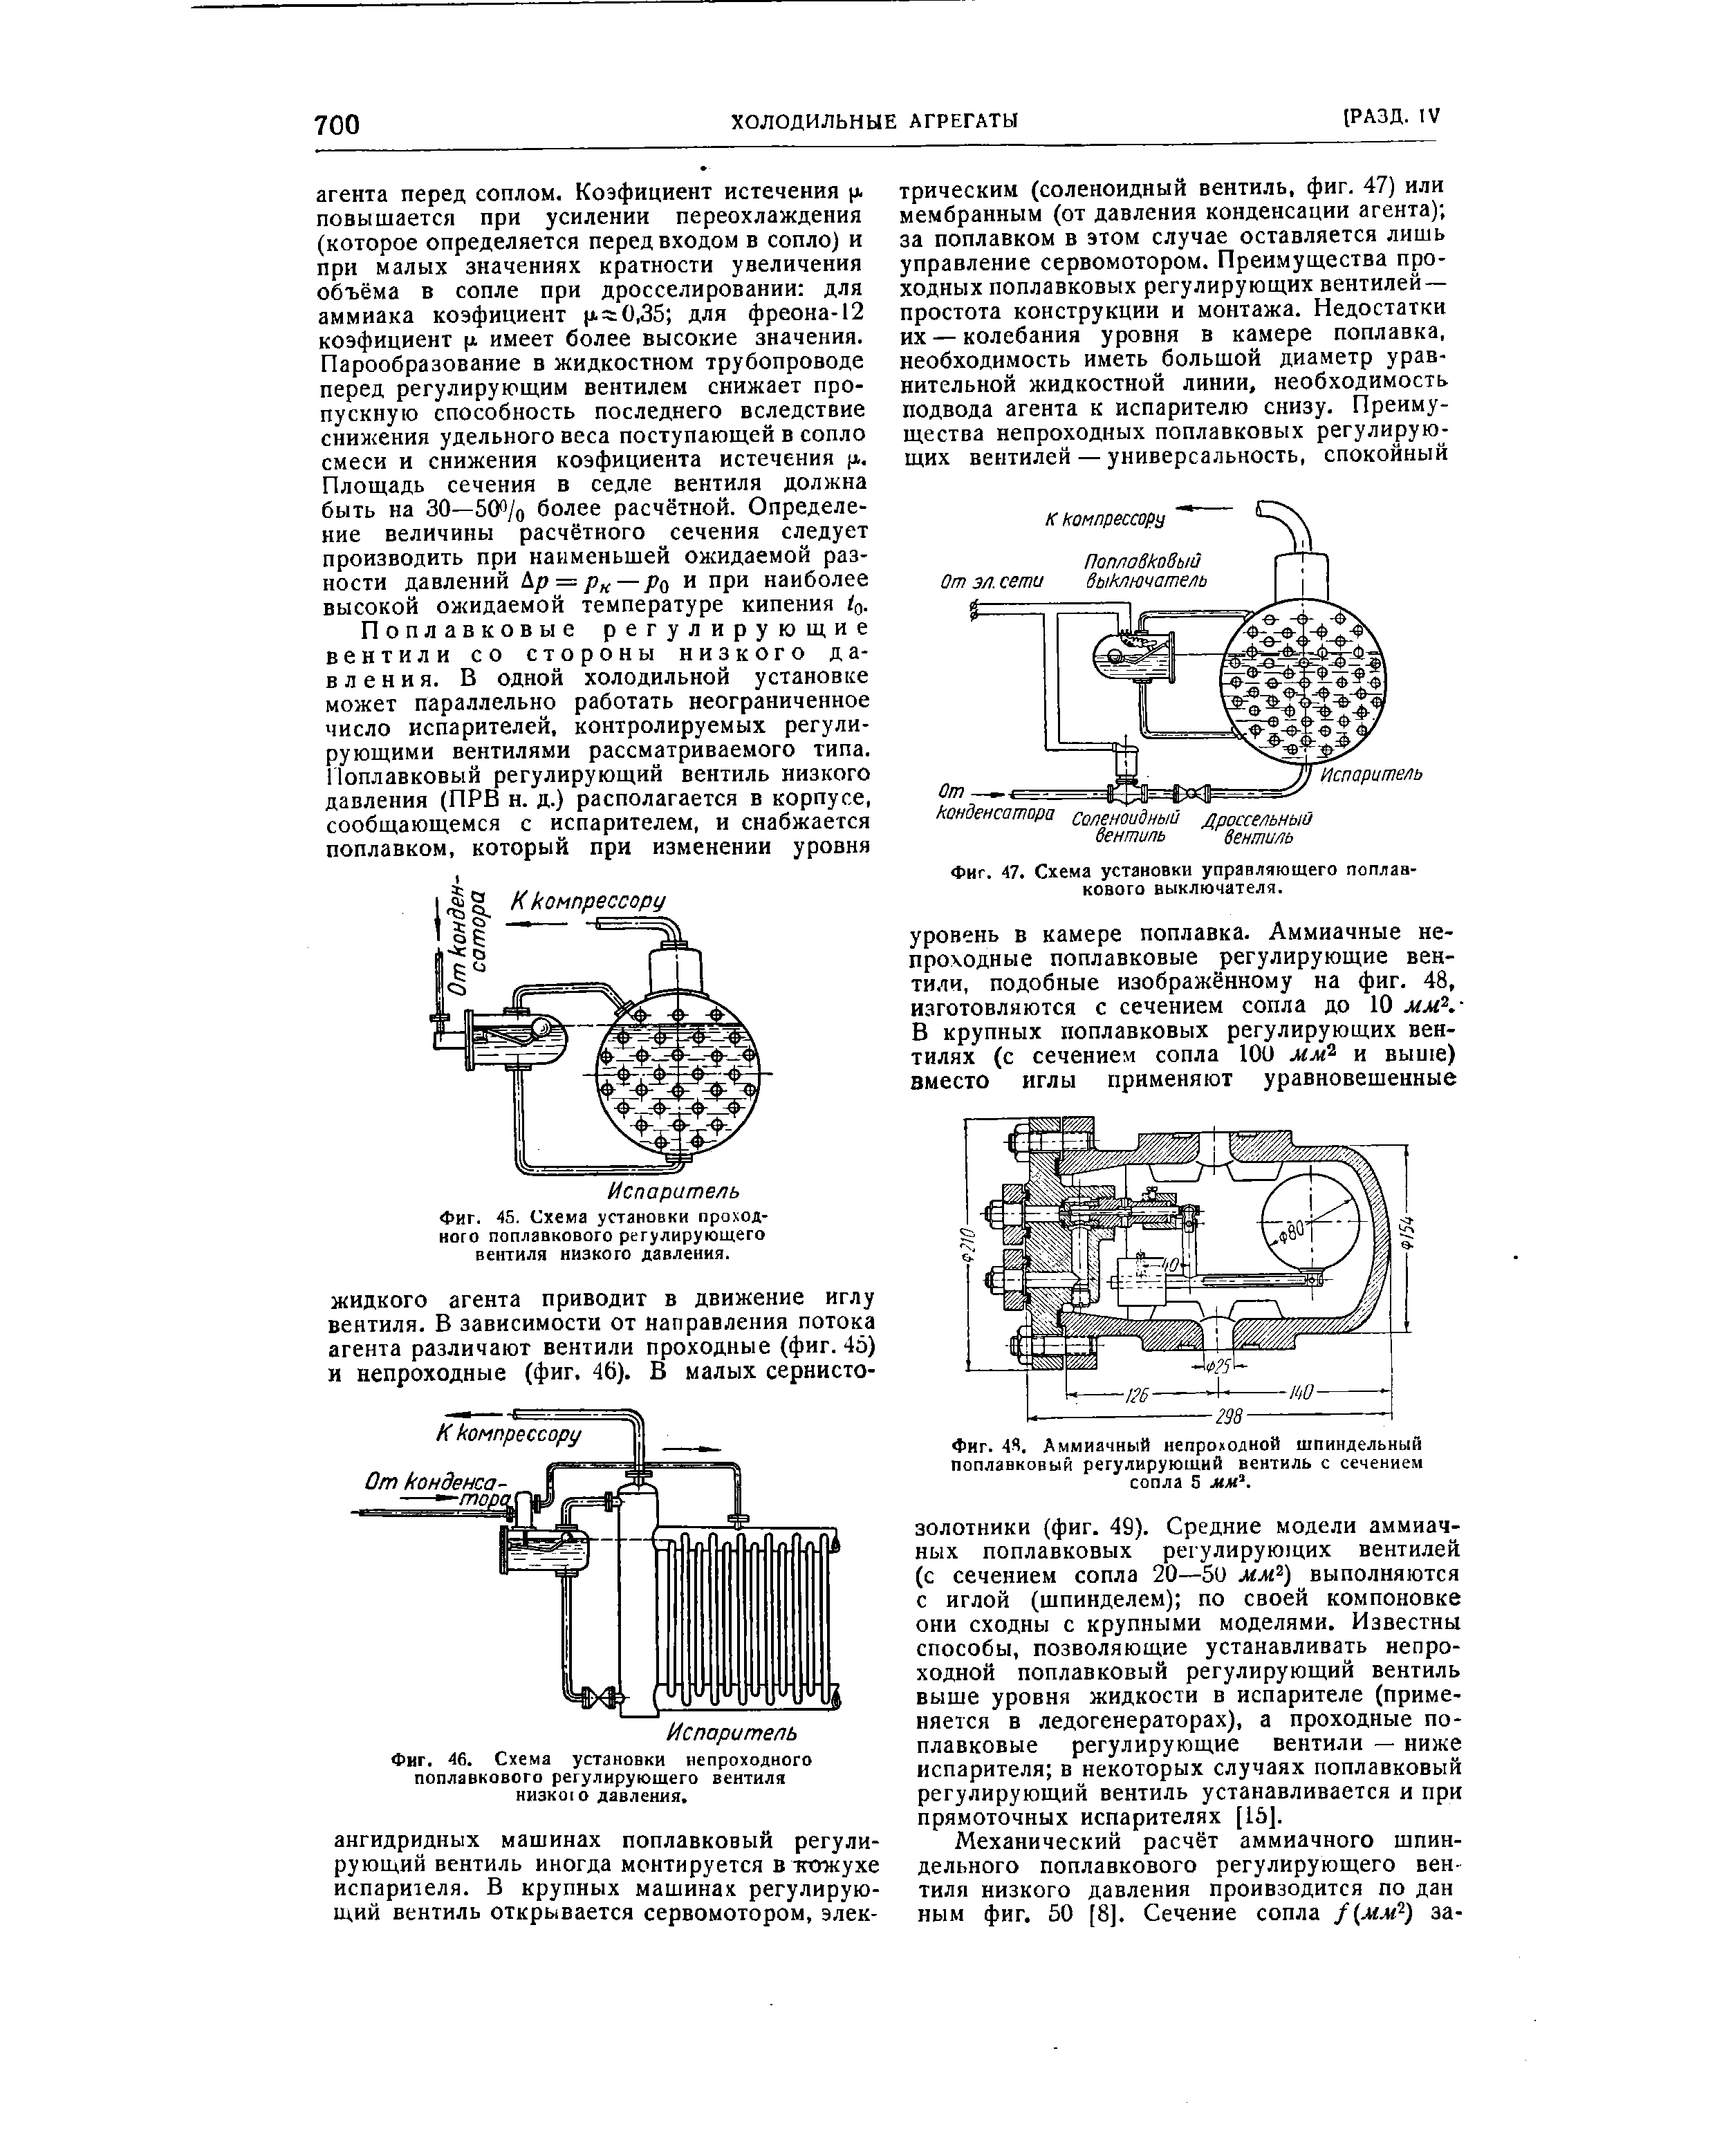 Фиг. 47. Схема установки управляющего поплавкового выключателя.
